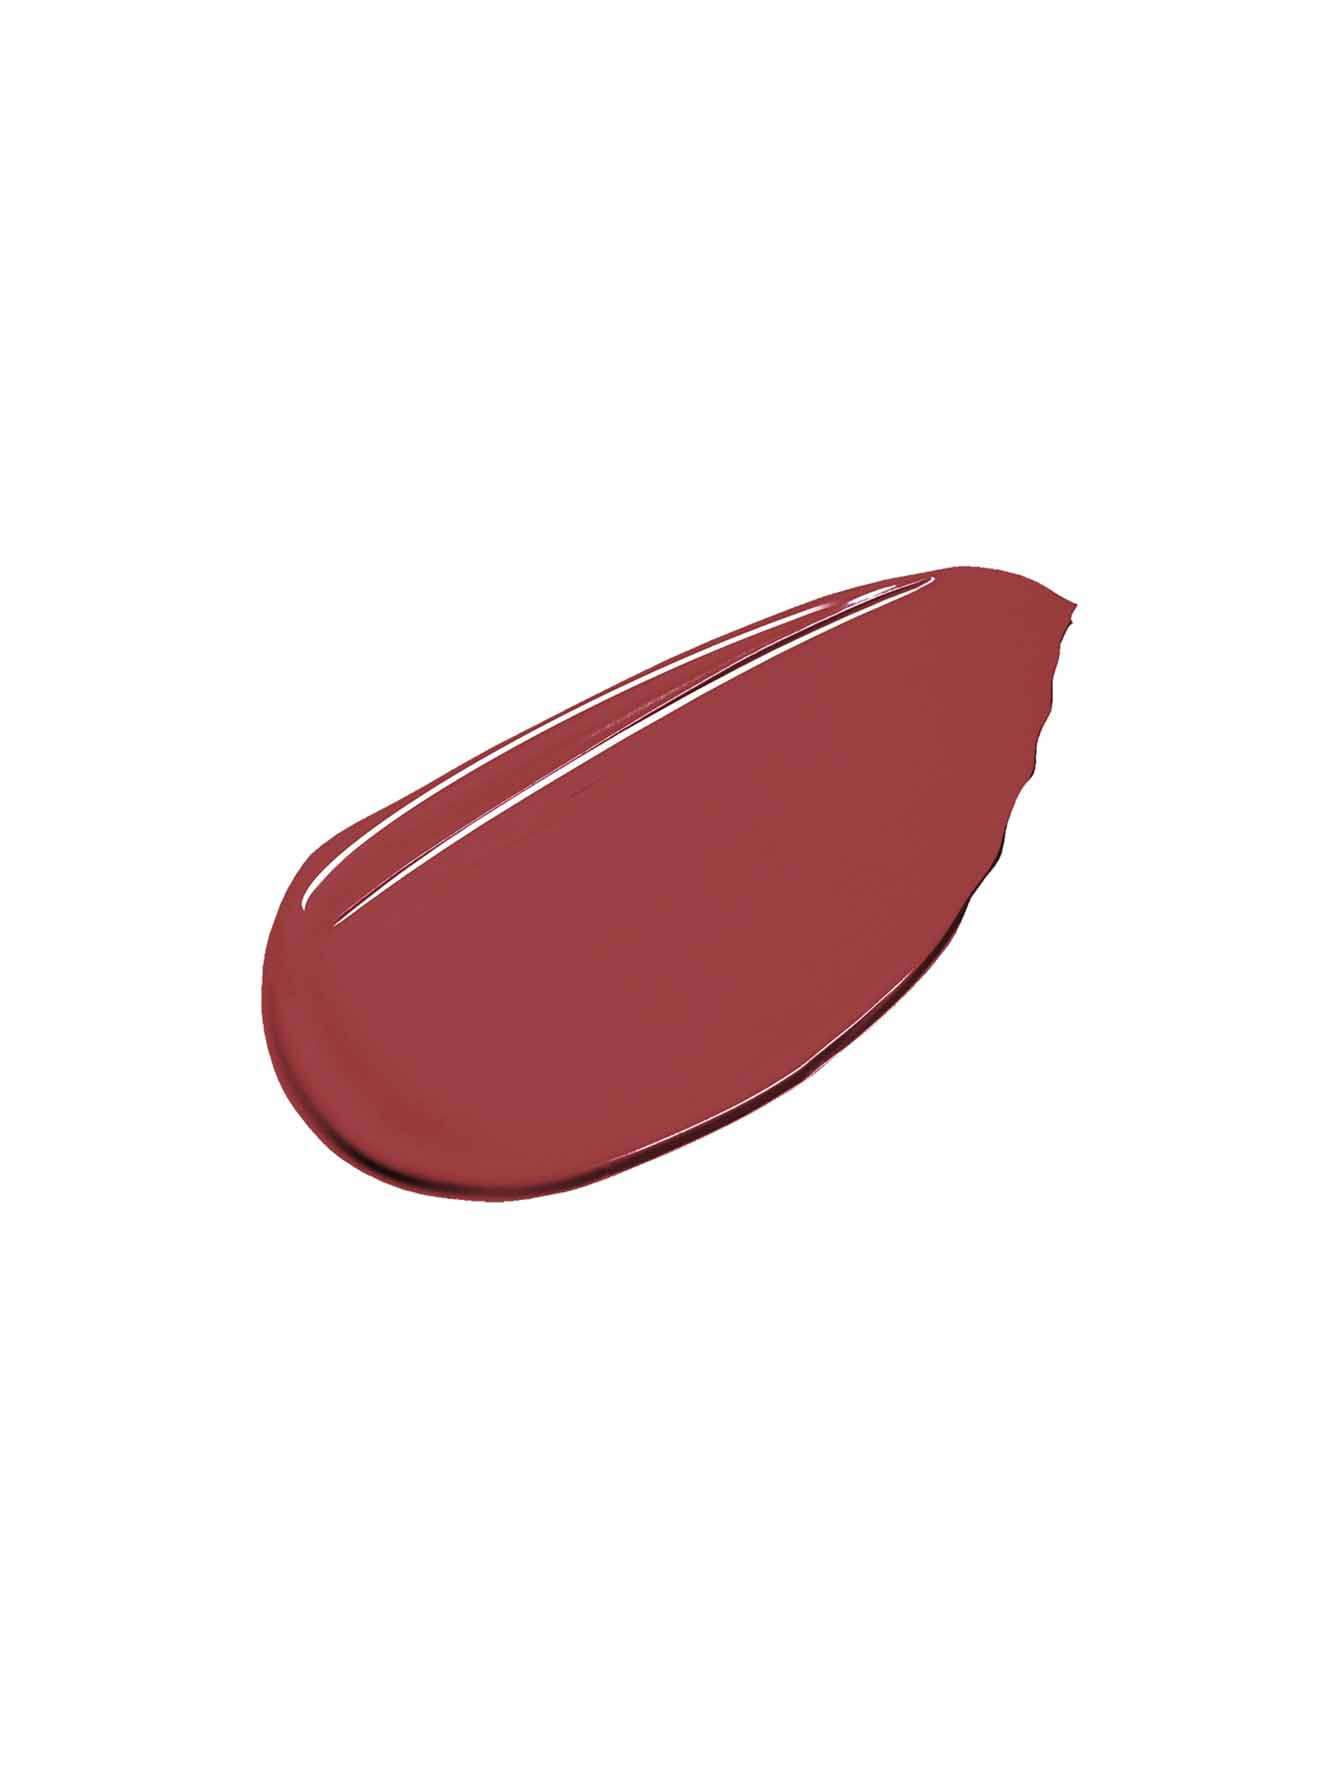 Рефил губной помады Contouring Lipstick, СL05 Soft Red, 2 г - Обтравка1